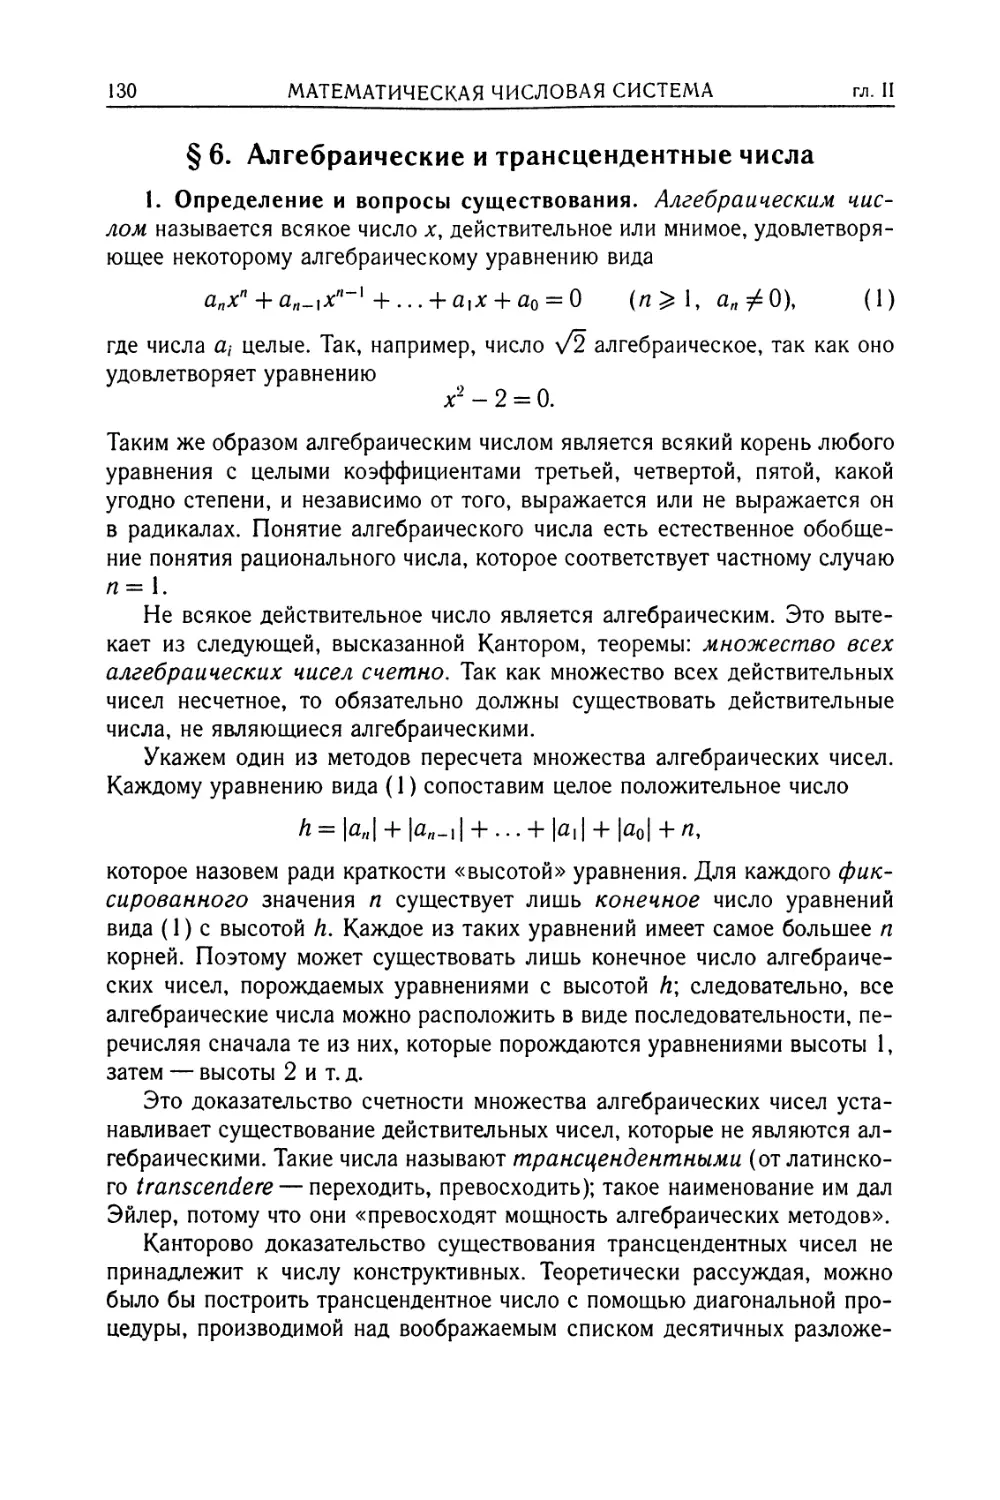 § 6. Алгебраические и трансцендентные числа